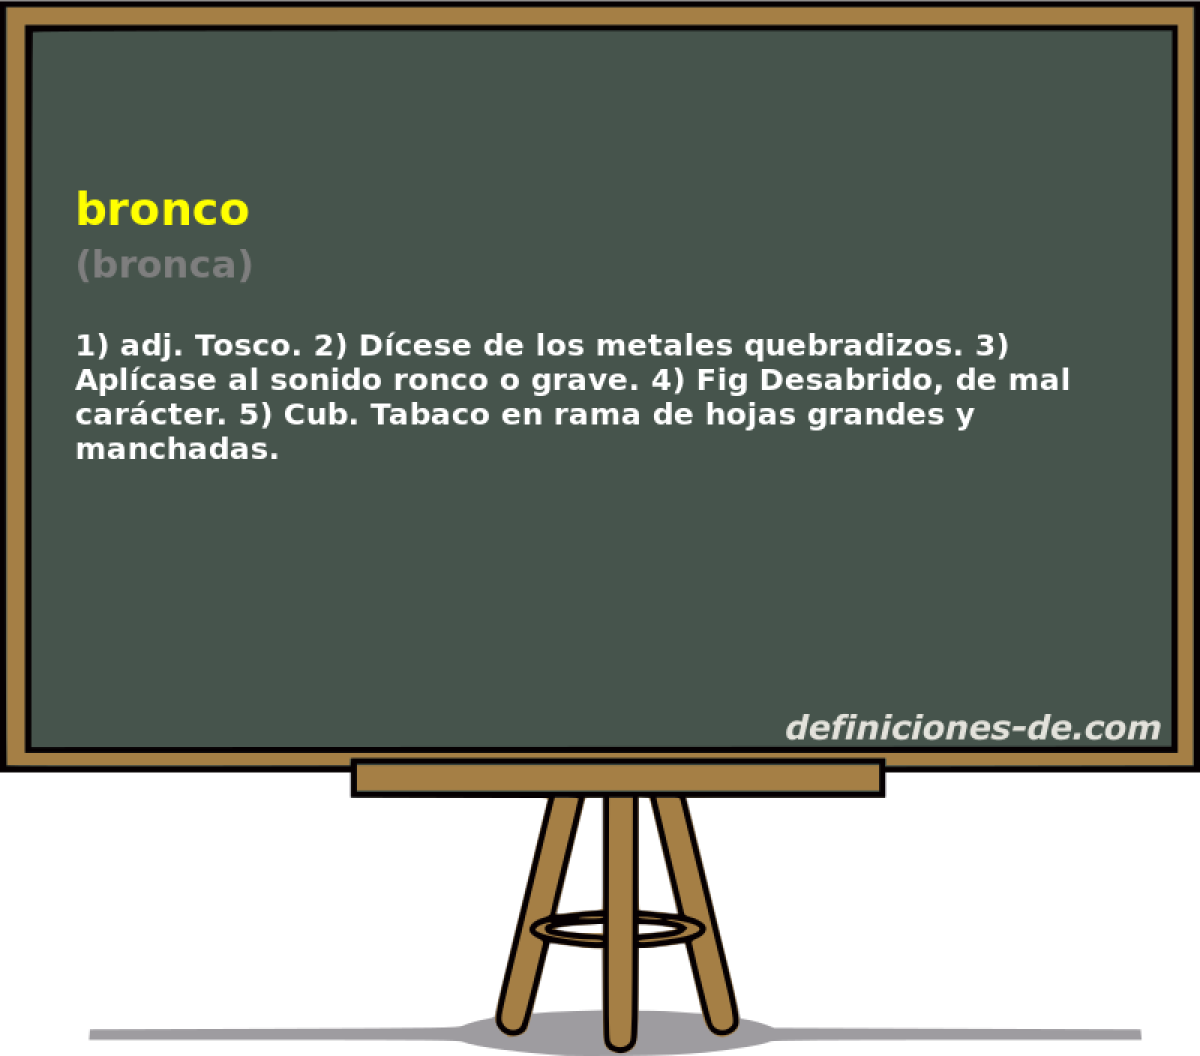 bronco (bronca)